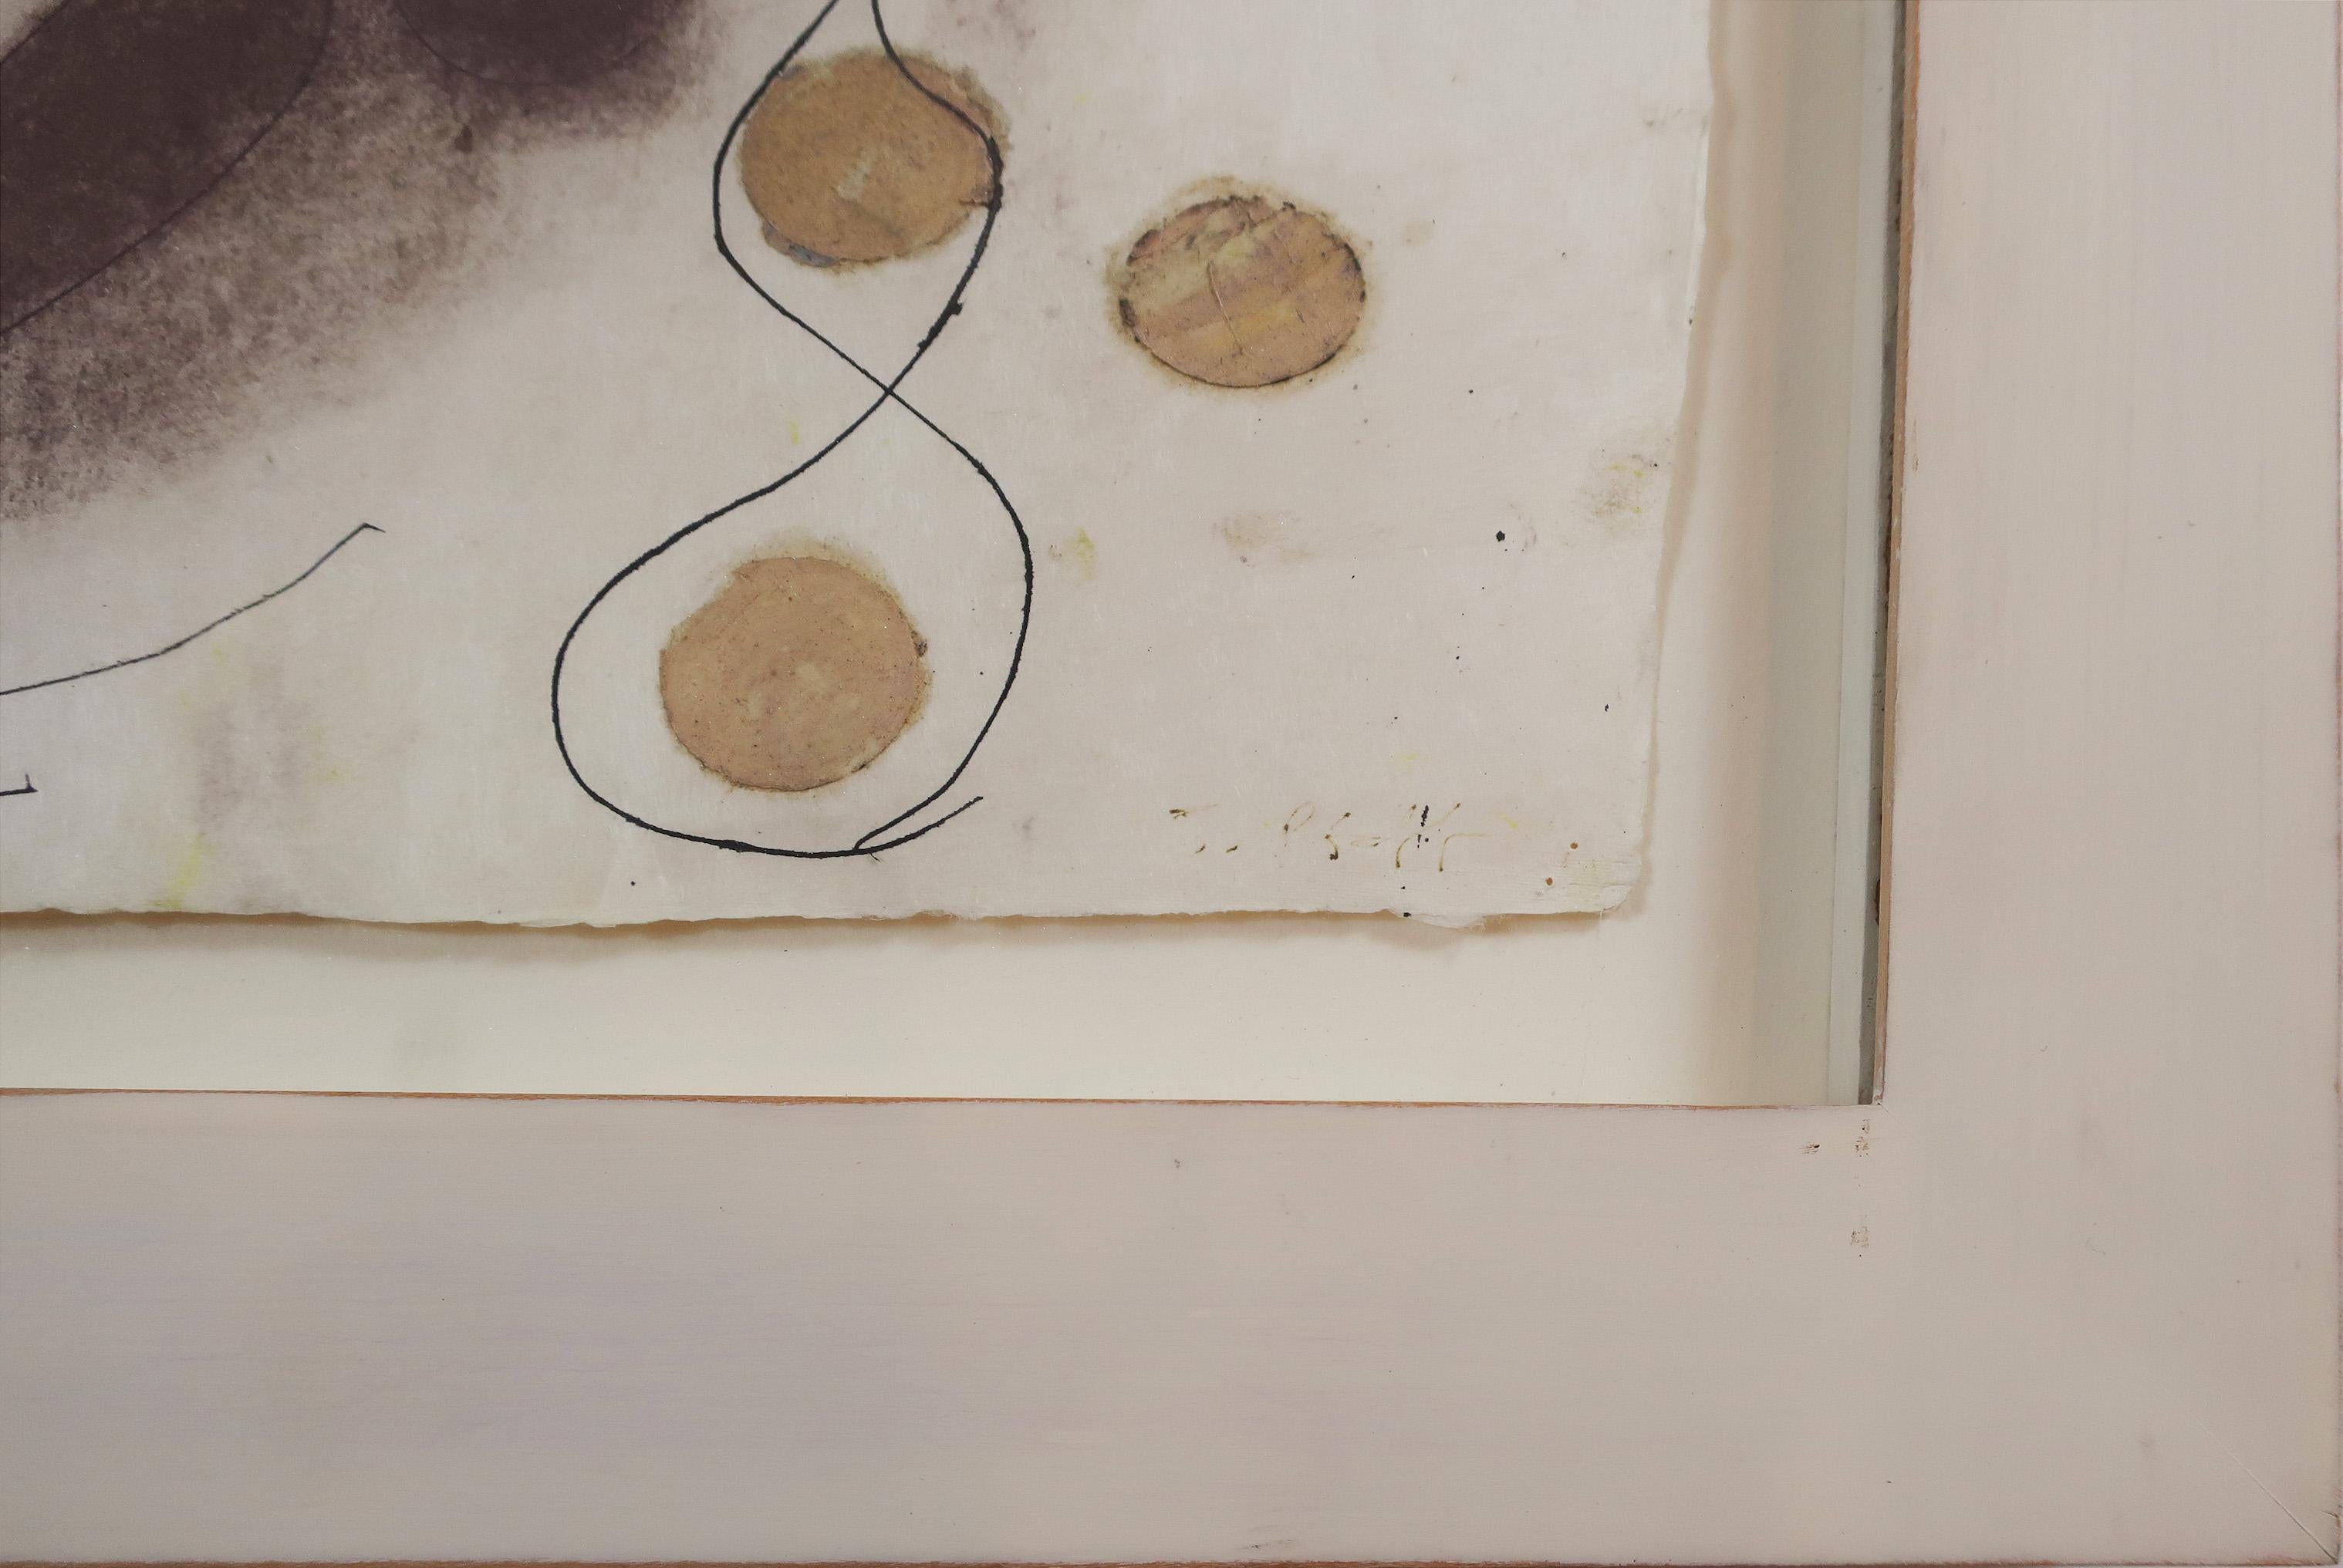 Judy Pfaff
Sans titre, 1993
Techniques mixtes sur papier
20 x 30 pouces (feuille)
25 x 35 pouces (cadre)
Signé

Cadre réalisé par des artistes. Bois lavé blanc clair, montage sur flotteur. Face de 1,75'', profondeur de 3/8''. 